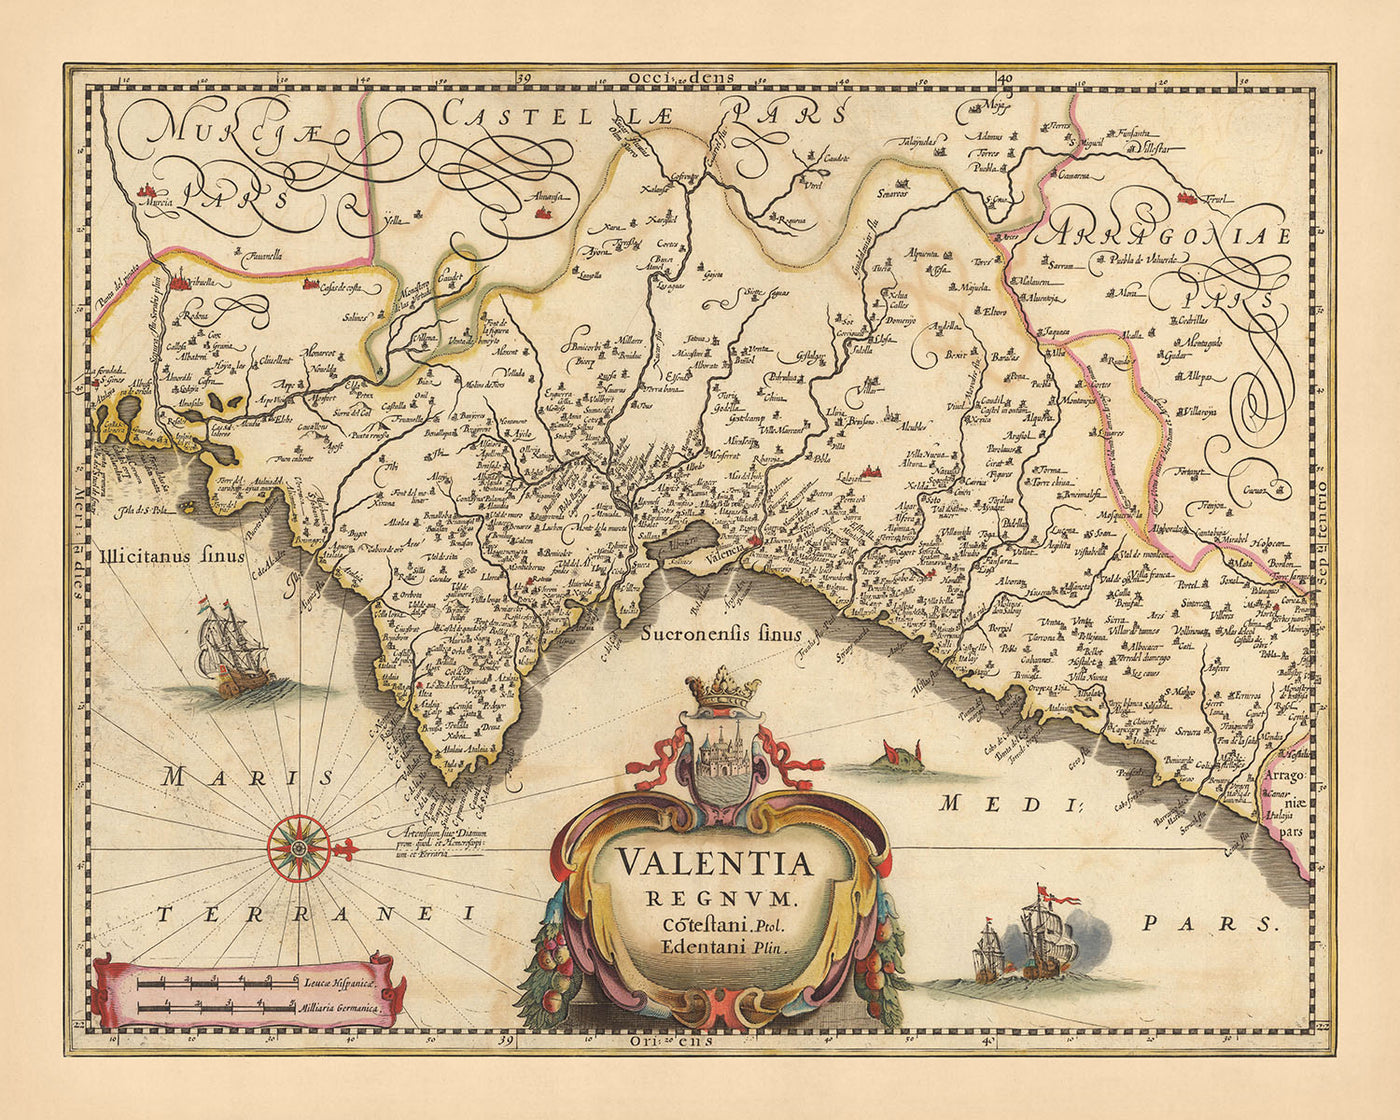 Alte Karte des Königreichs Valencia, Spanien von Visscher, 1690: Murcia, Valencia, Alicante, Dénia, Castellón de la Plana